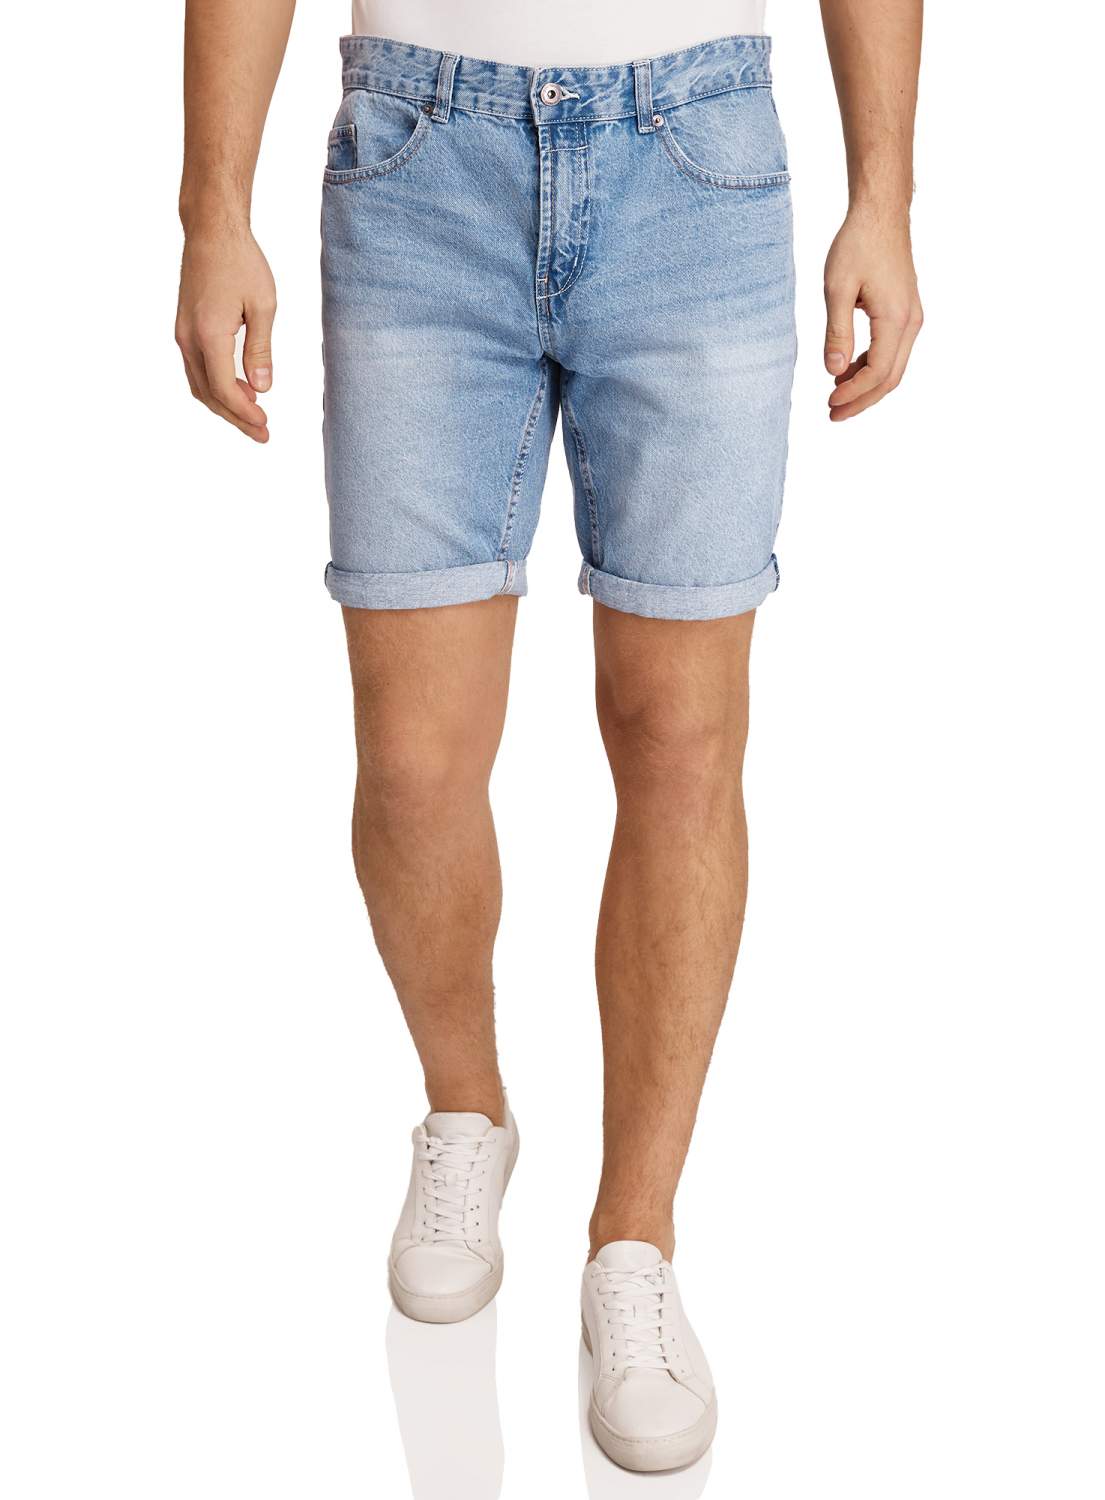 Джинсовые шорты мужские - купить джинсовые шорты мужские, цены на Мегамаркет